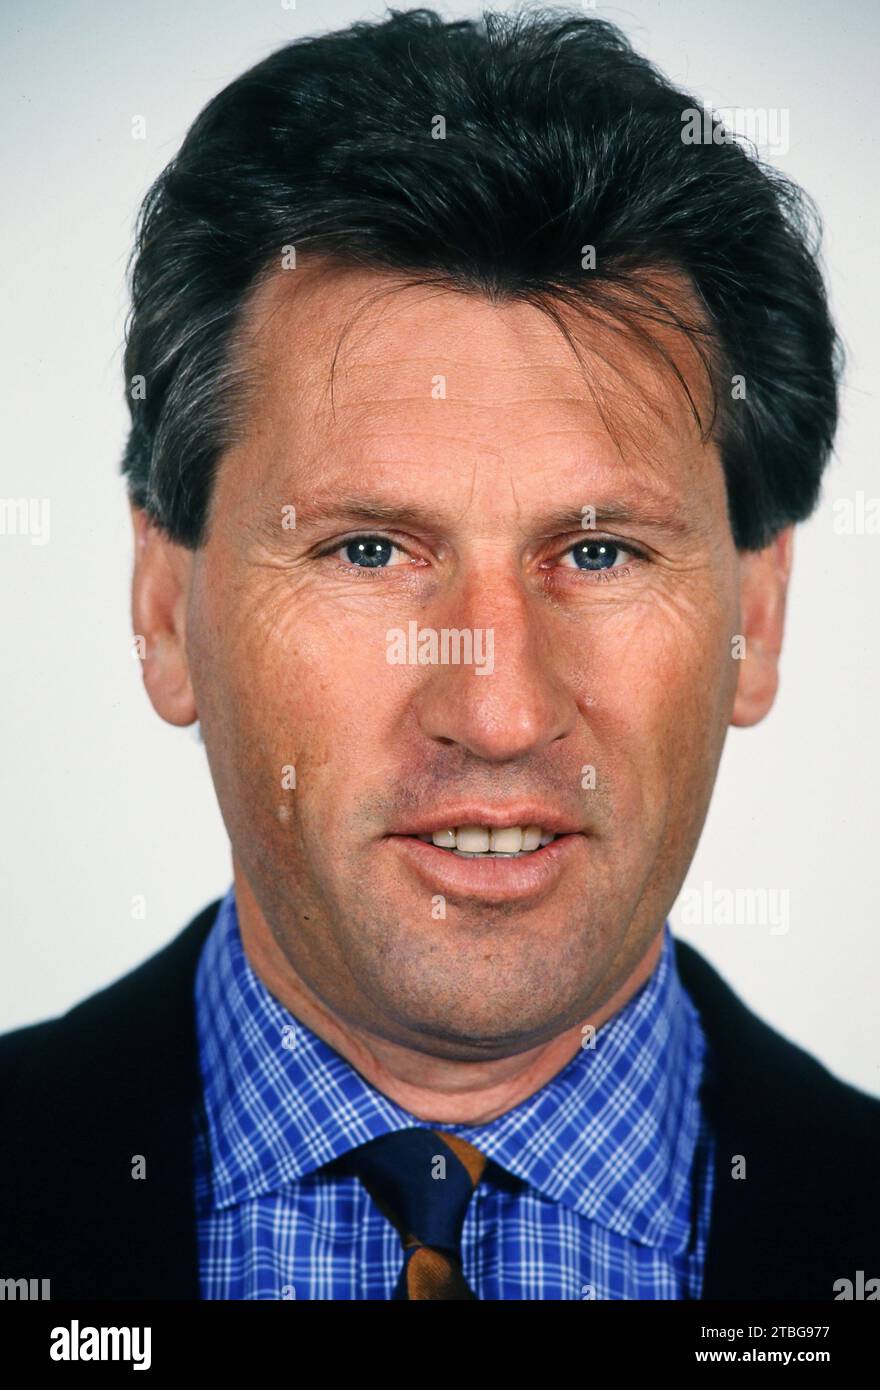 Manfred Manni Kaltz, ehemaliger deutscher Fußballspieler, Deutschland um 1997. Foto Stock